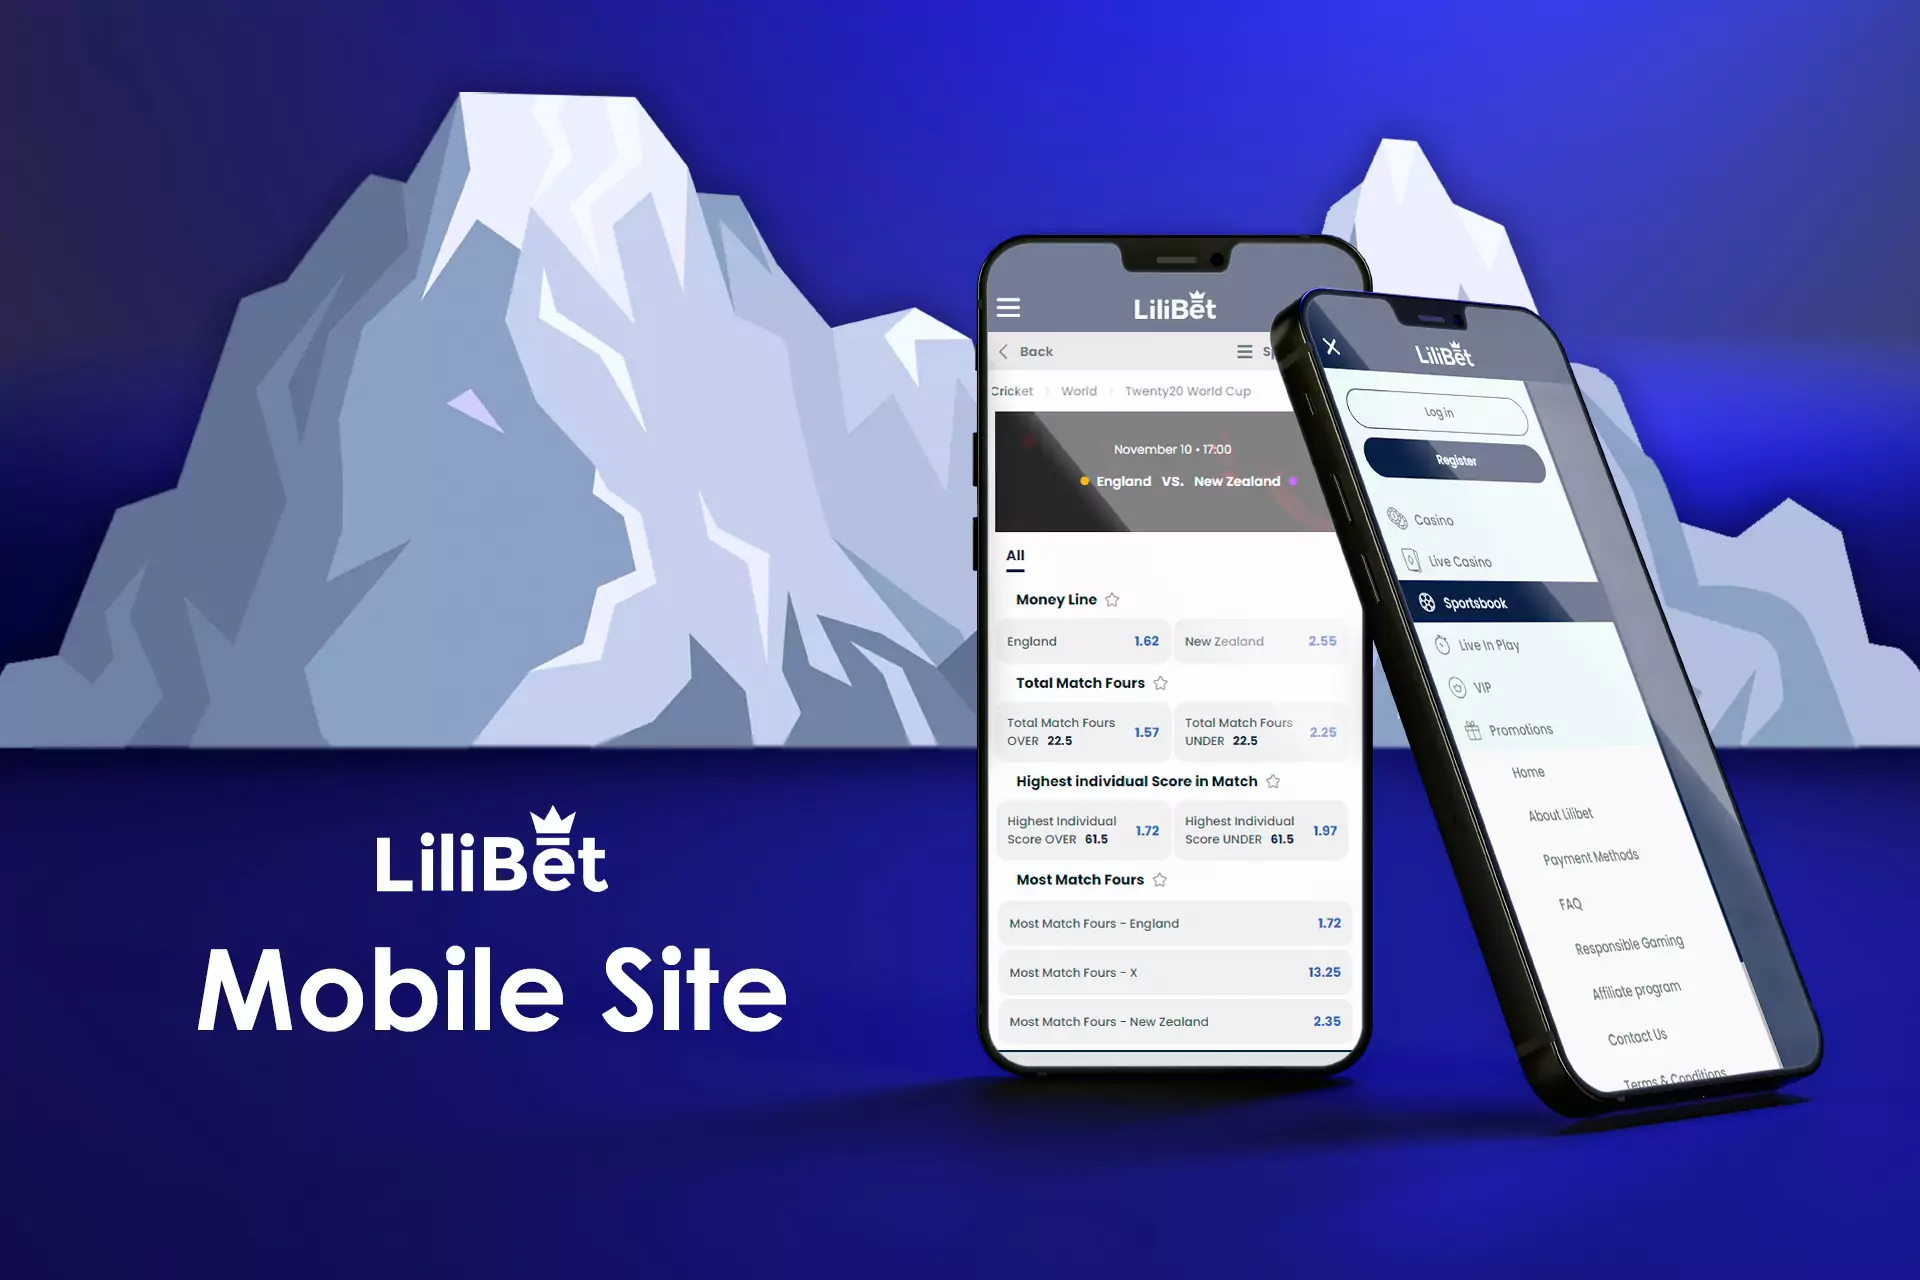 अभी तक कोई Lilibet ऐप नहीं है लेकिन आप अपने स्मार्टफोन पर साइट के ब्राउज़र संस्करण का उपयोग कर सकते हैं।